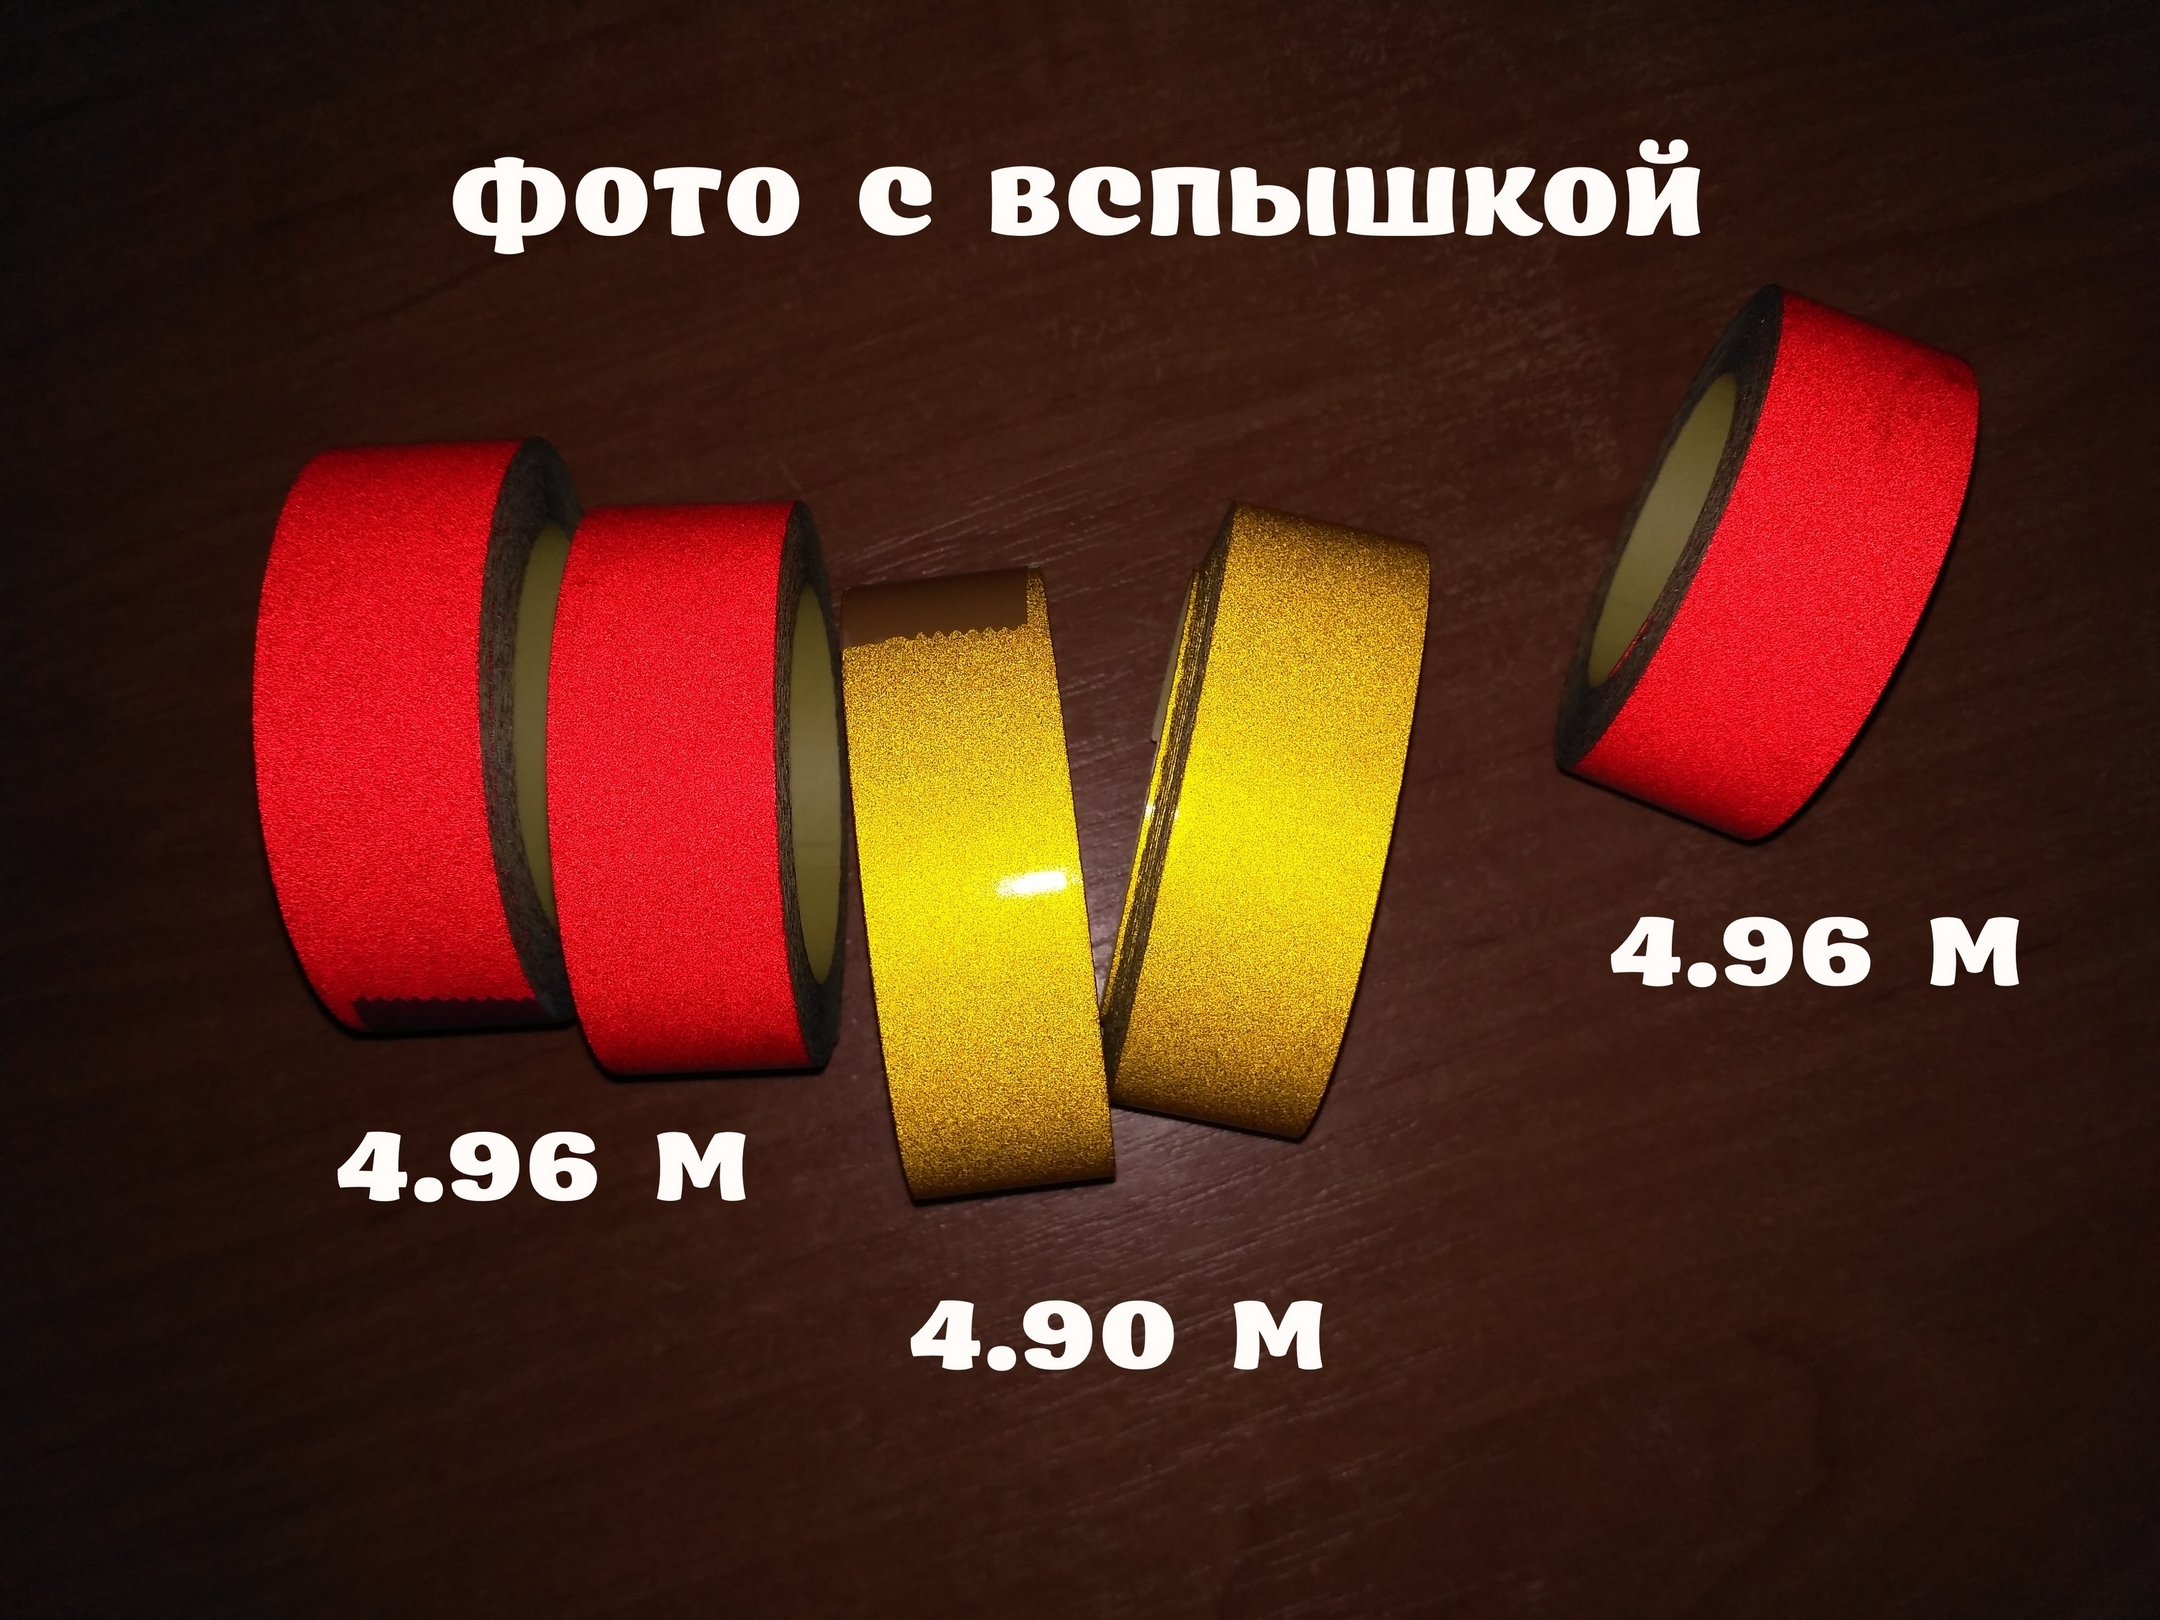 Светоотражающая клеющая лента Жёлтая, Красная 4.90 метров